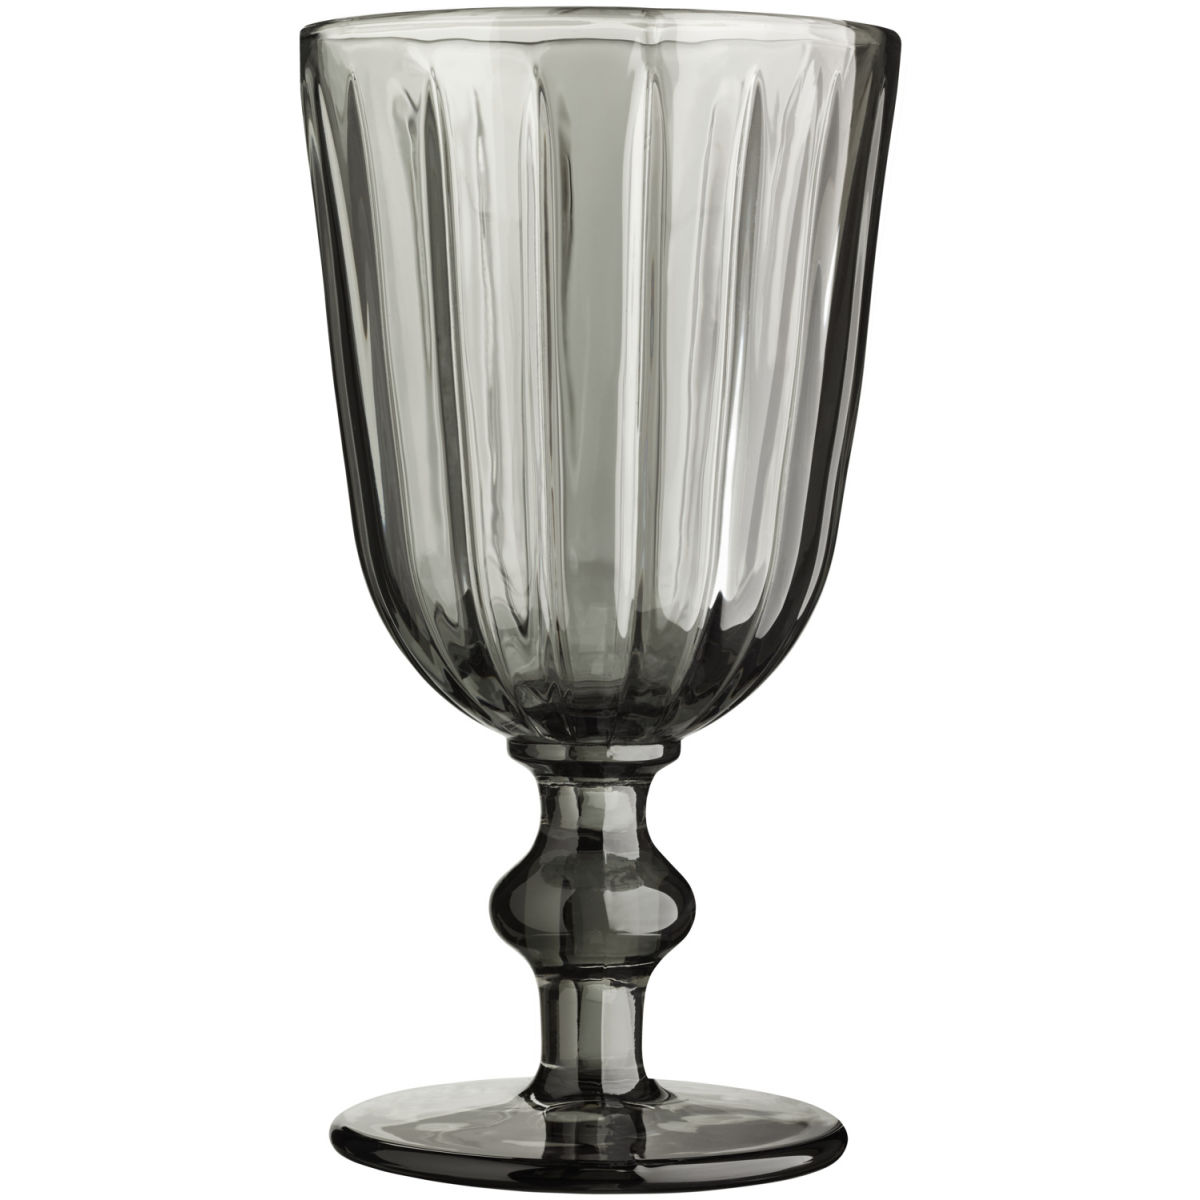 Vega Wijnglas Marlene; 290ml, 8.5x15.8 cm (ØxH); grijs; 6 stuk / verpakking